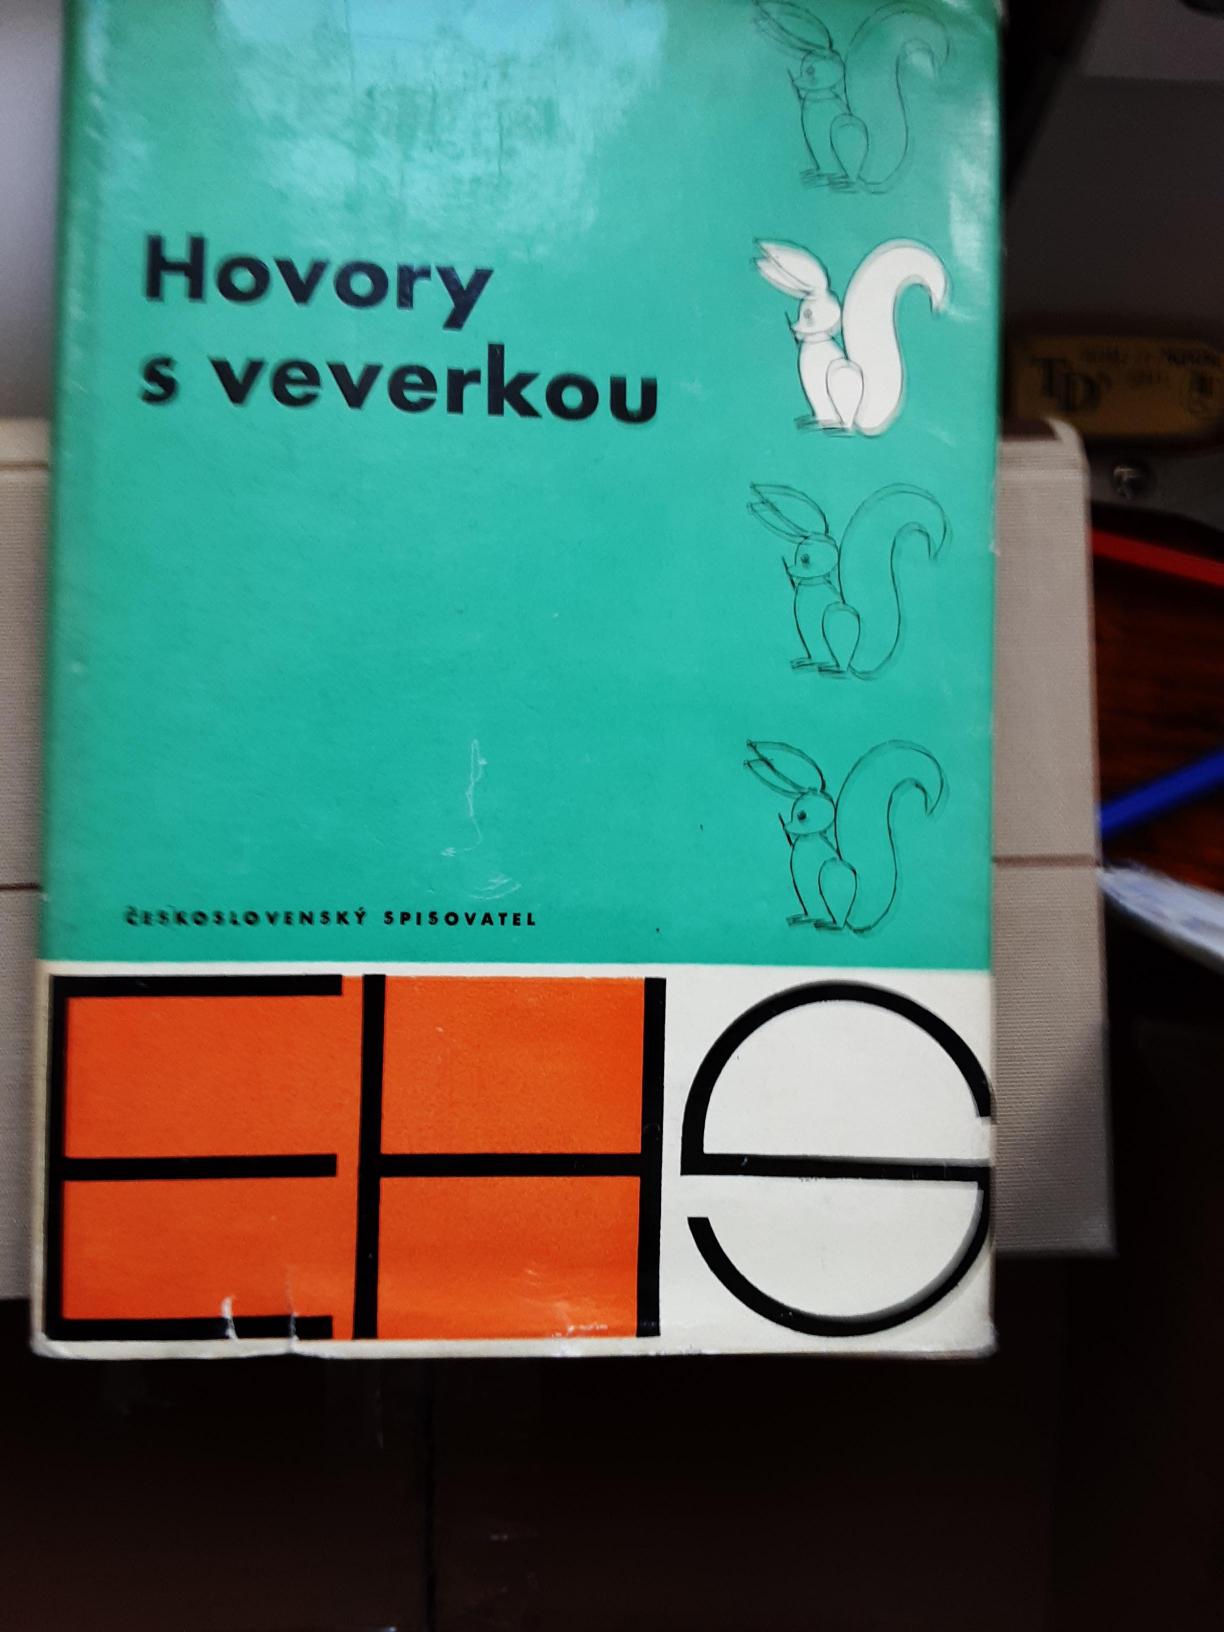 Hovory s veverkou